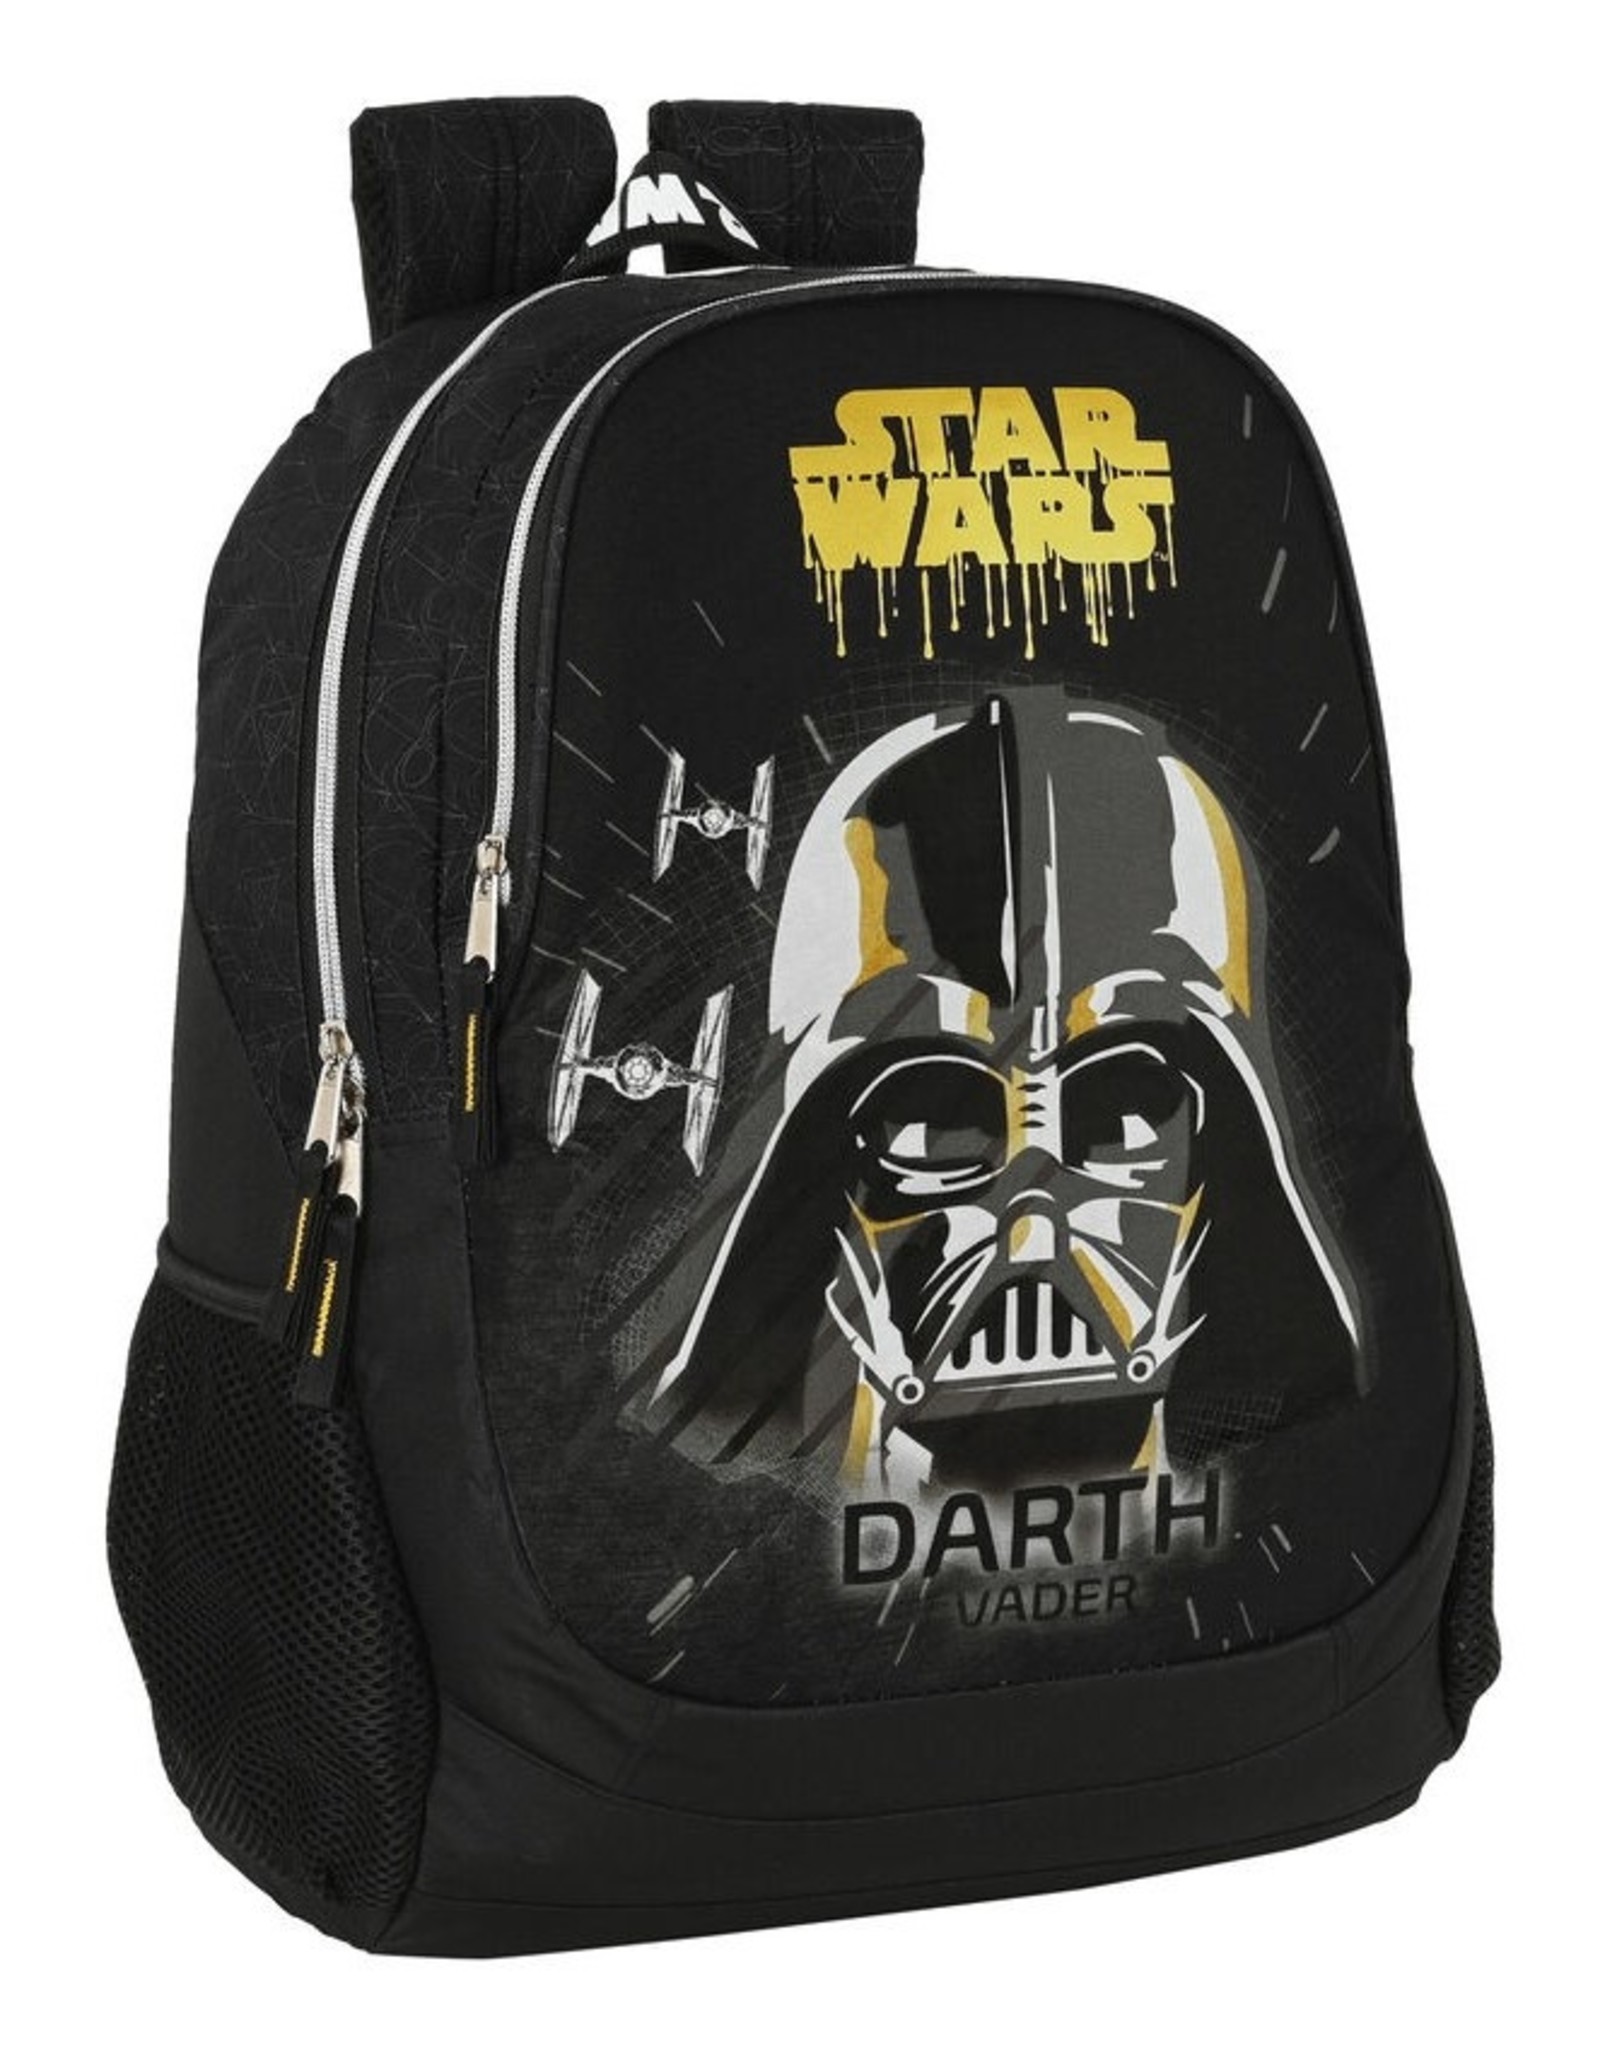 Safta Star Wars bags - Star Wars Fighter backpack